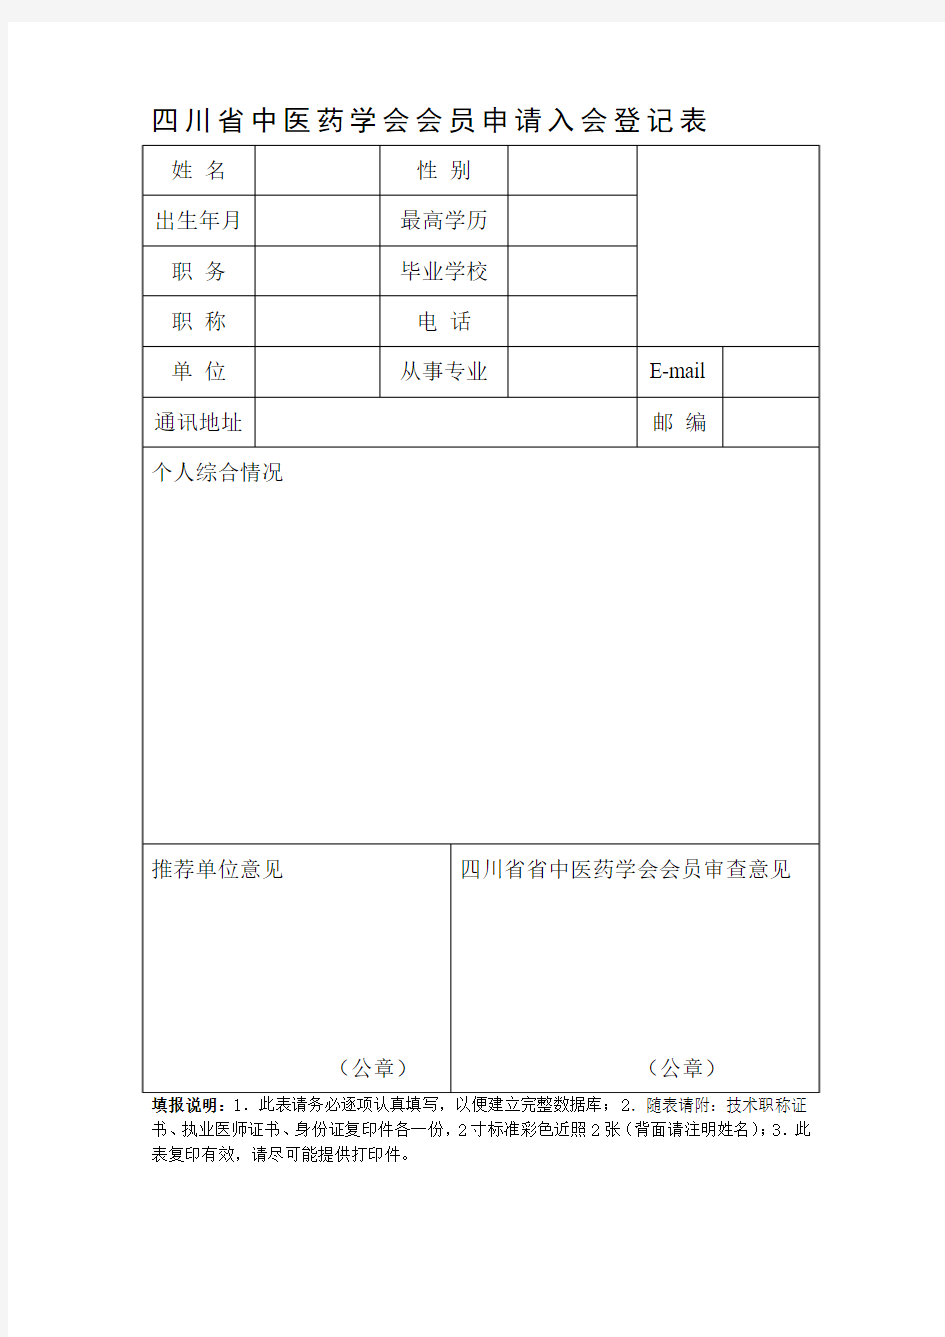 四川省中医药学会个人会员申请入会登记表